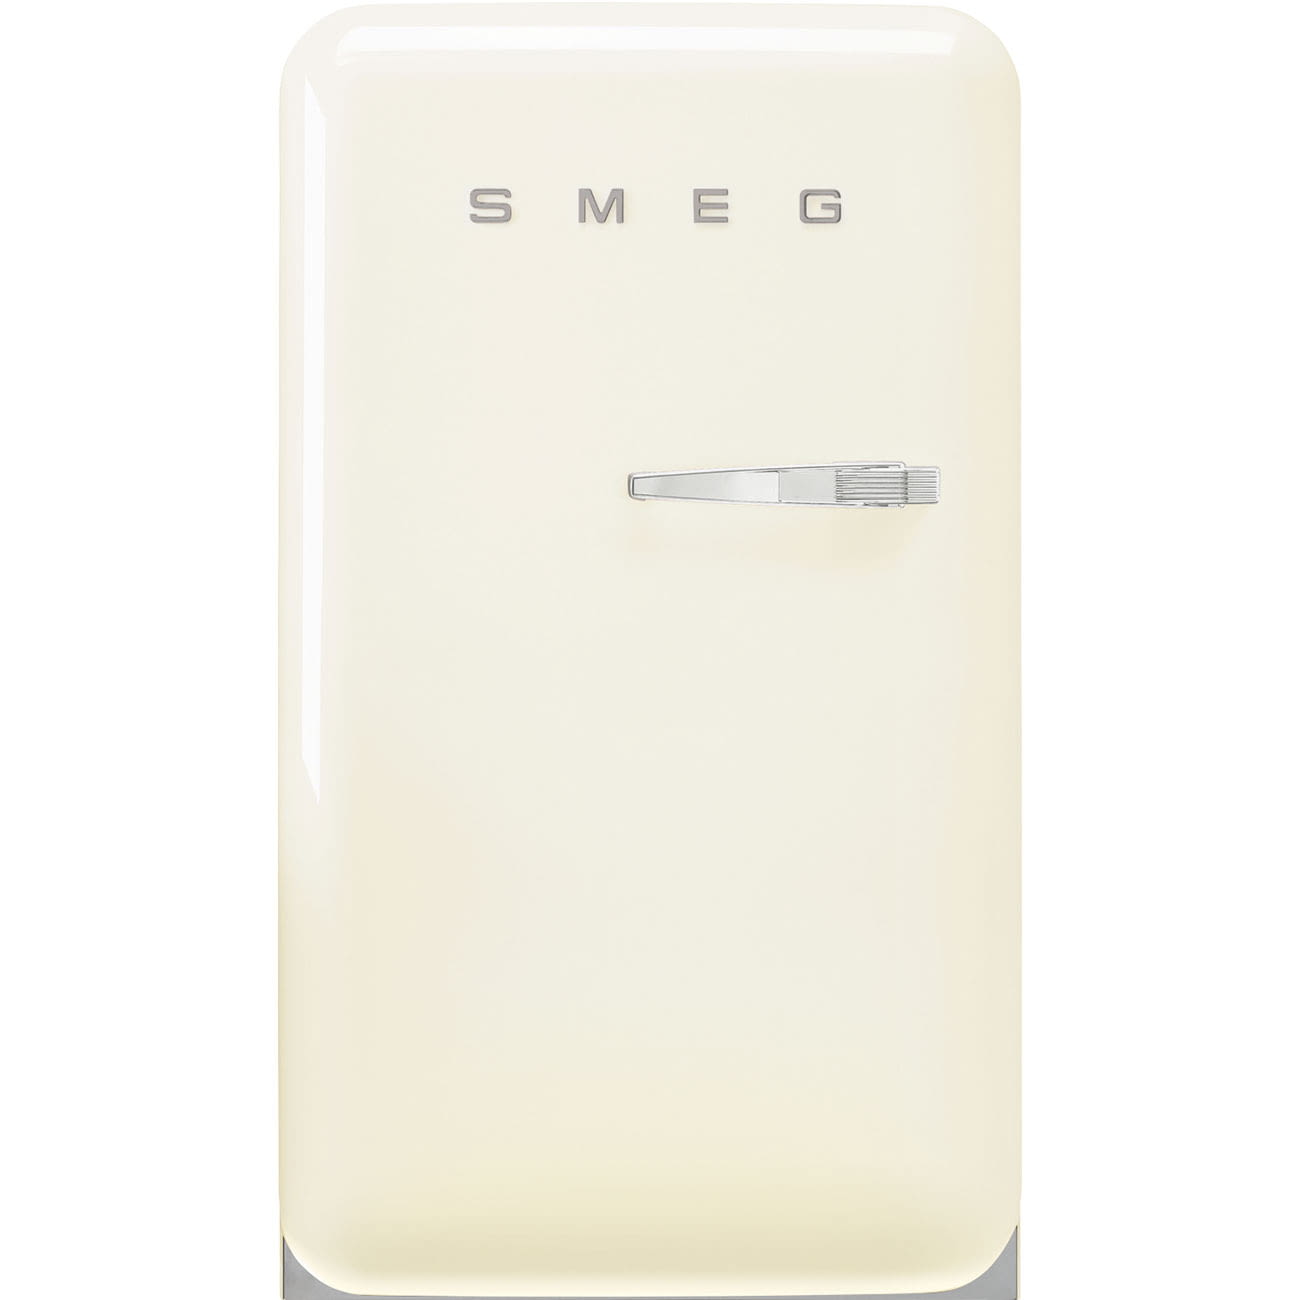 Frigorífico + Congelador Mini Crema Smeg FAB10LCR6 |Retro Años 50 | Bisagra Izquierda | Clase D